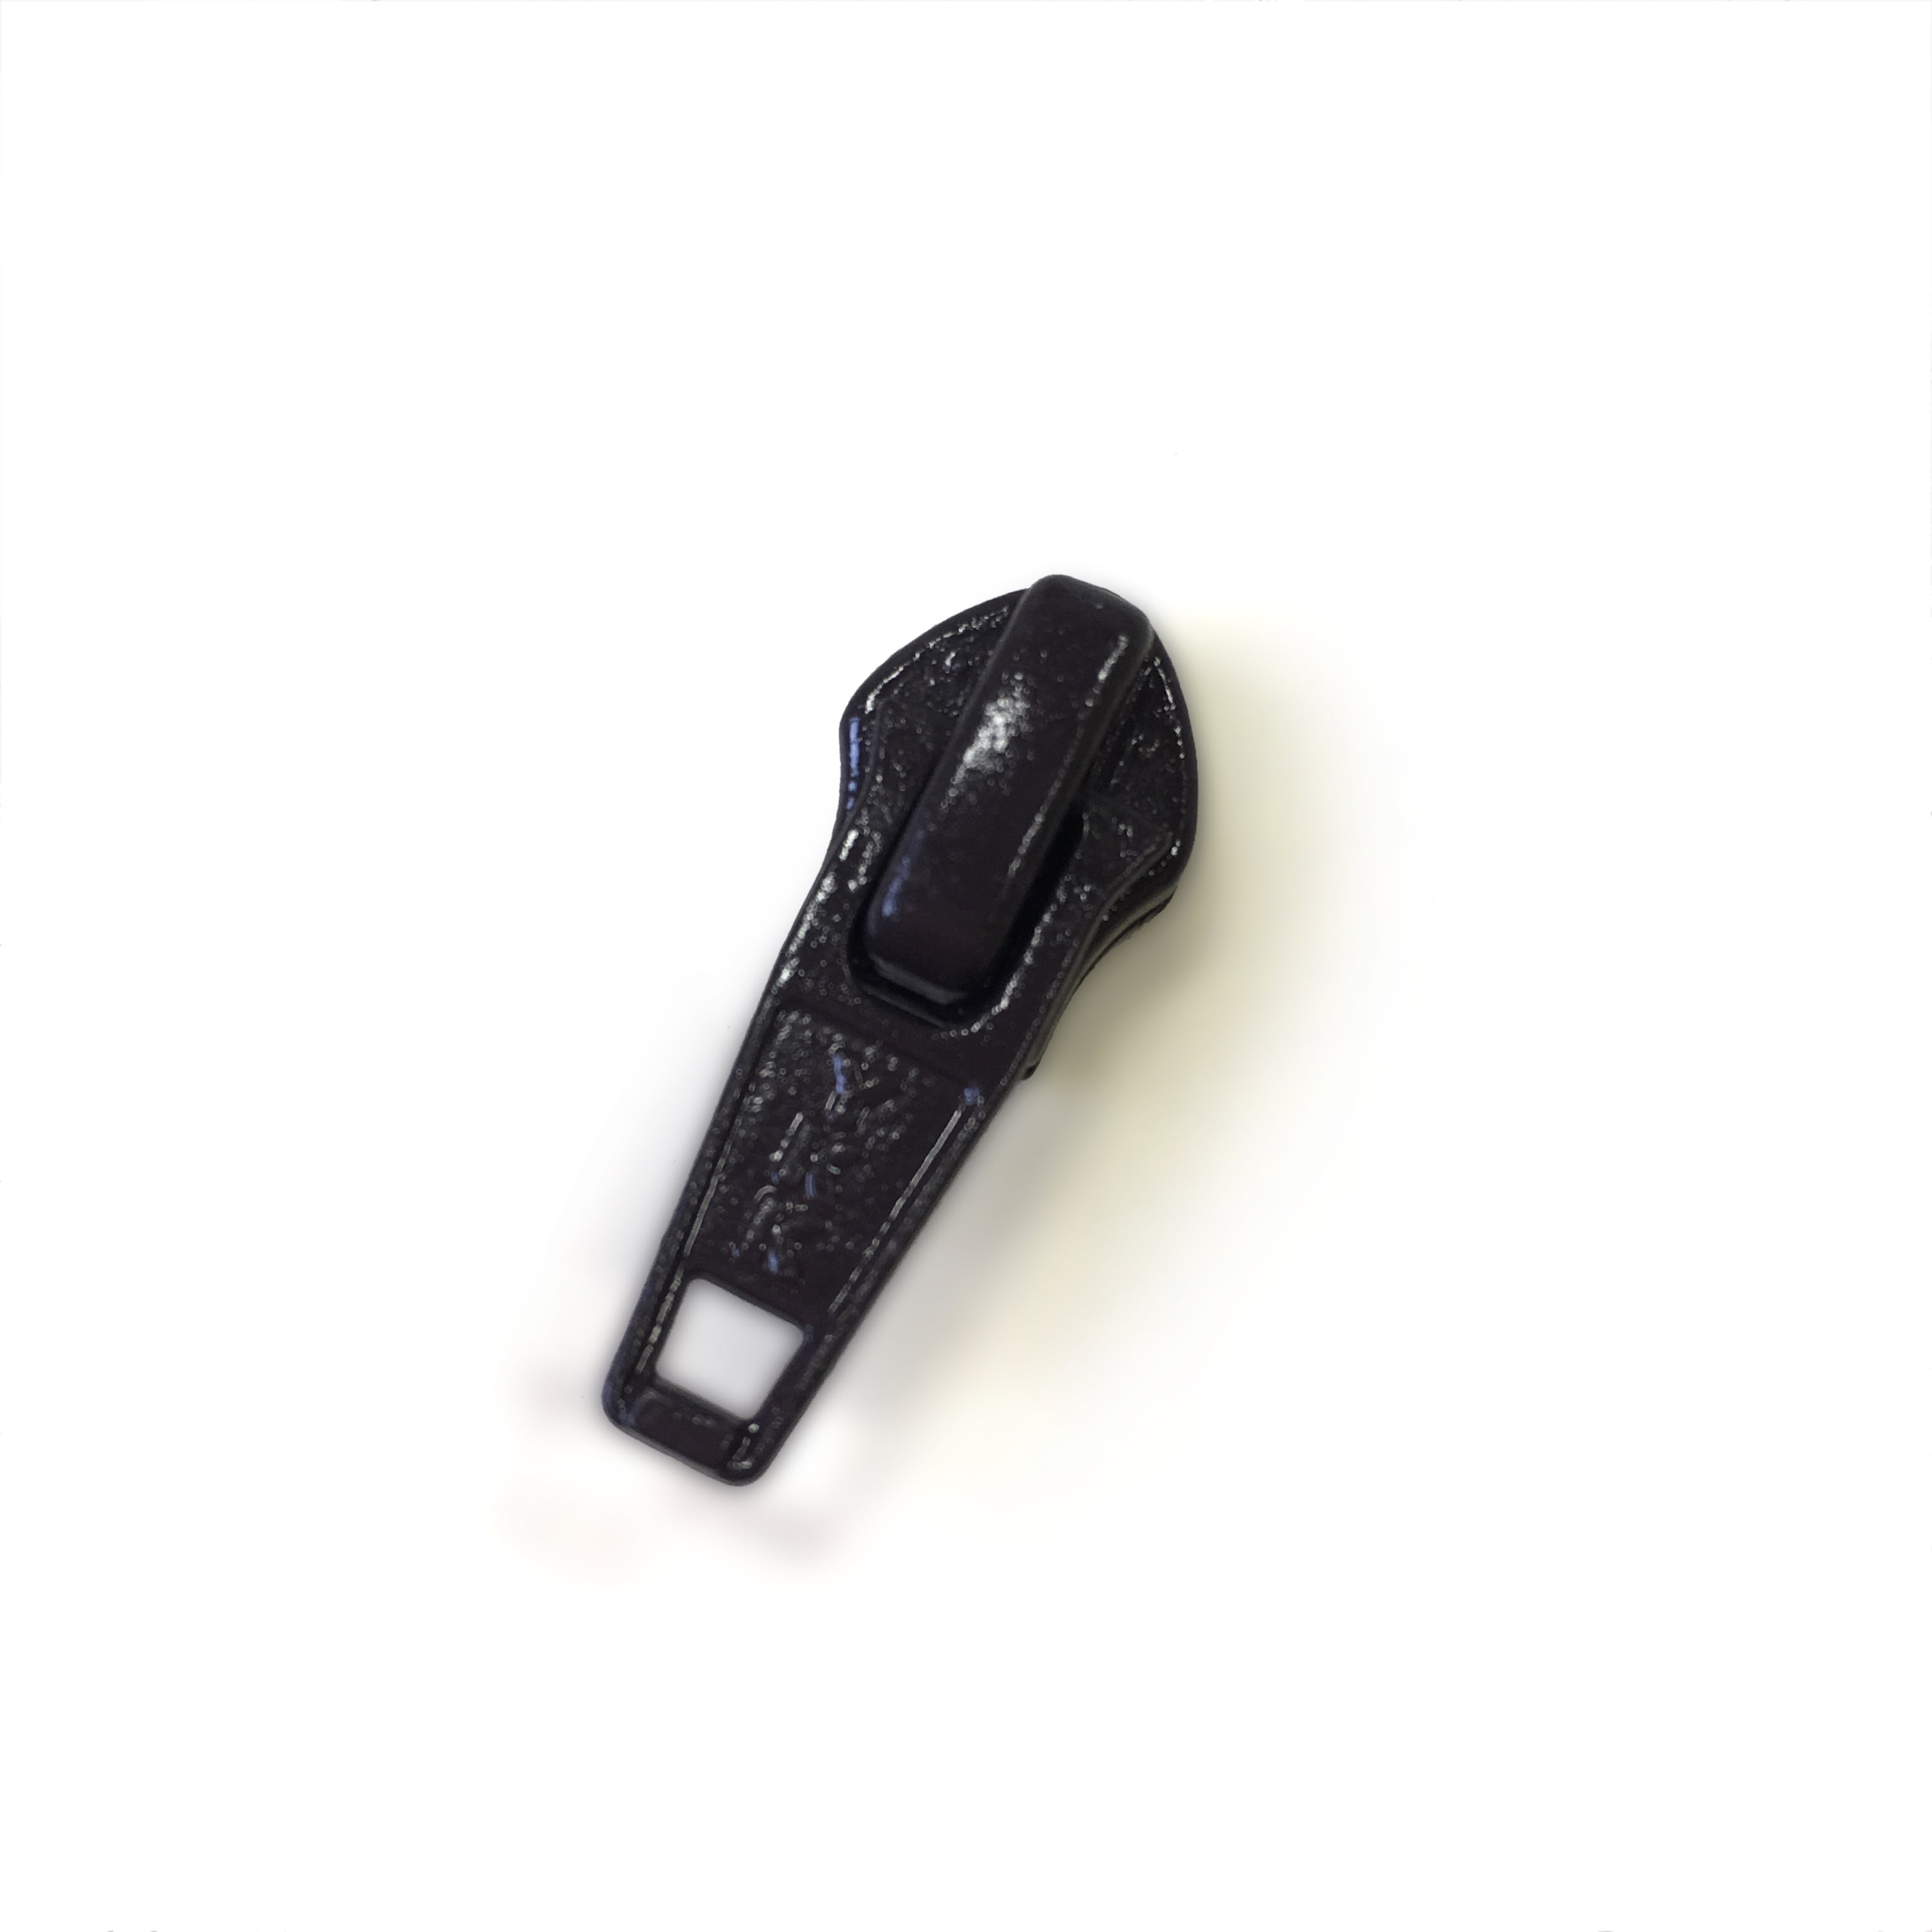 Zipper Pull for #5 Plastic Zipper - Black - Ghee's